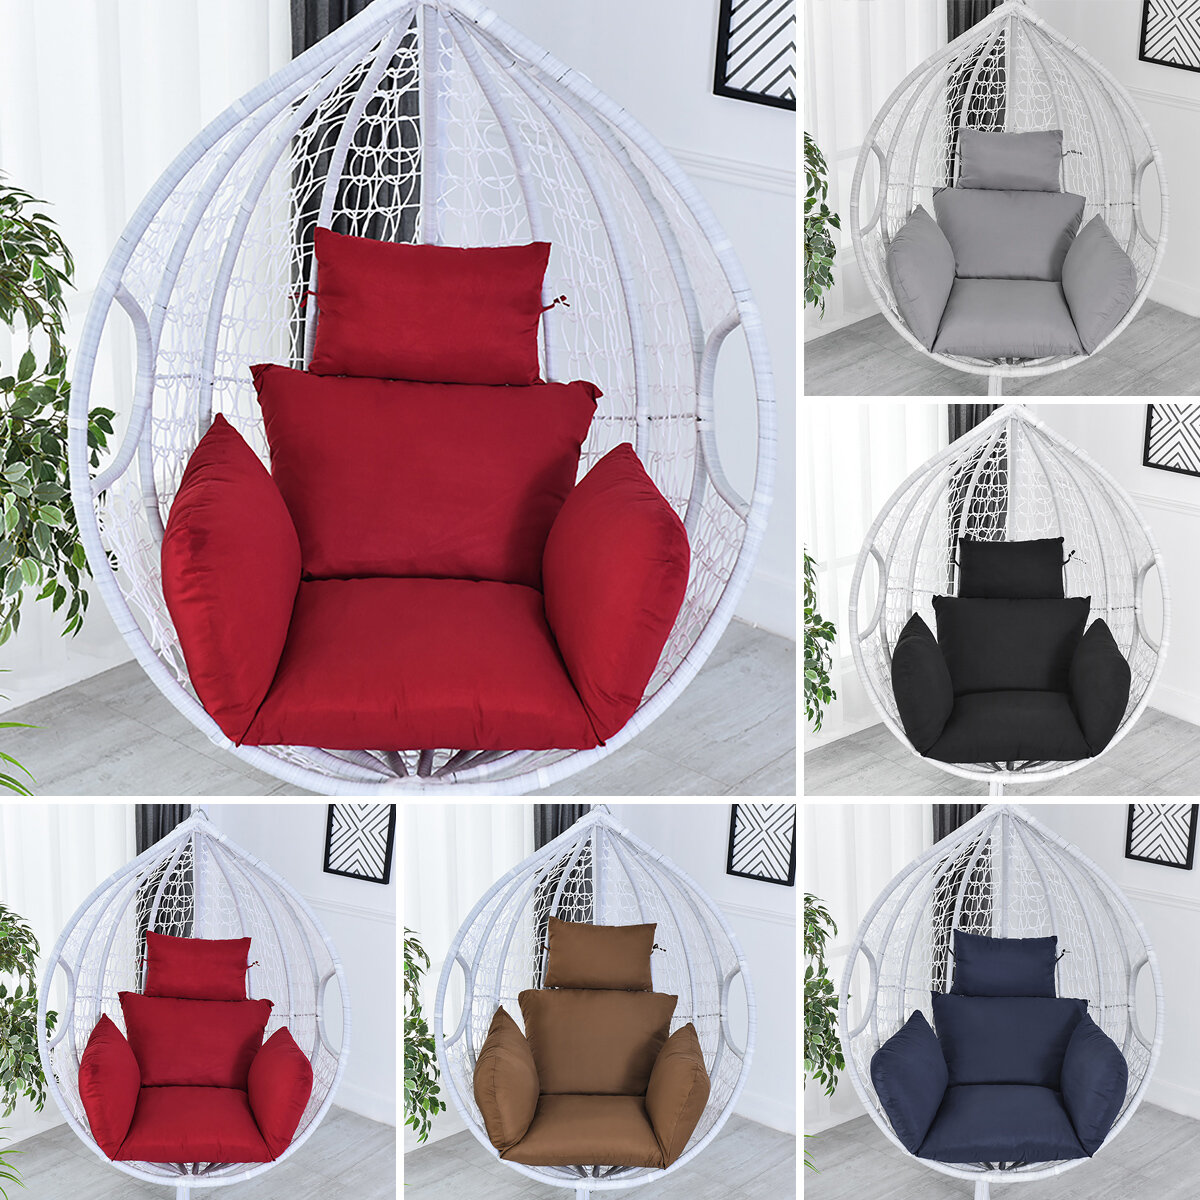 Zestaw poduszek Hammock Chair Cushion 6D Hollow za $29.99 / ~119zł